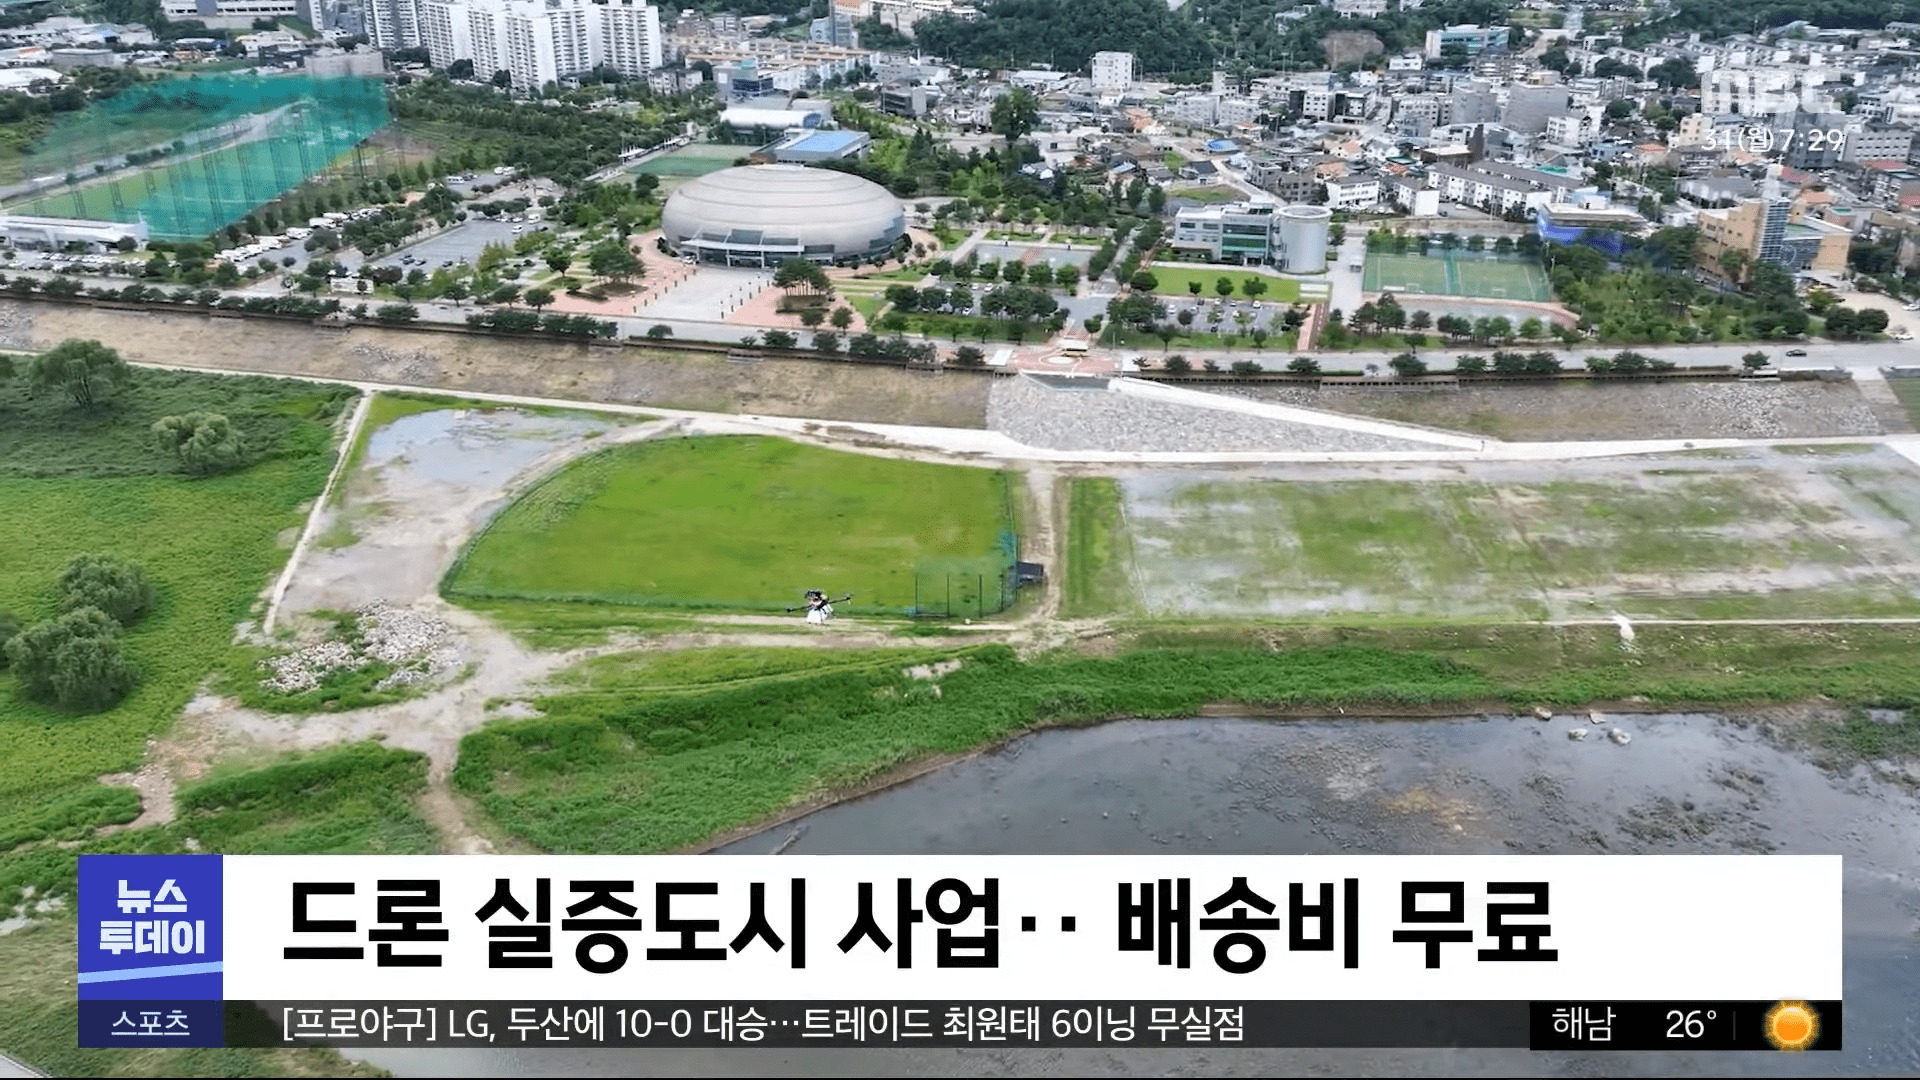 韓國偏鄉地區使用無人機快遞運送物資引發關注 - 電腦王阿達